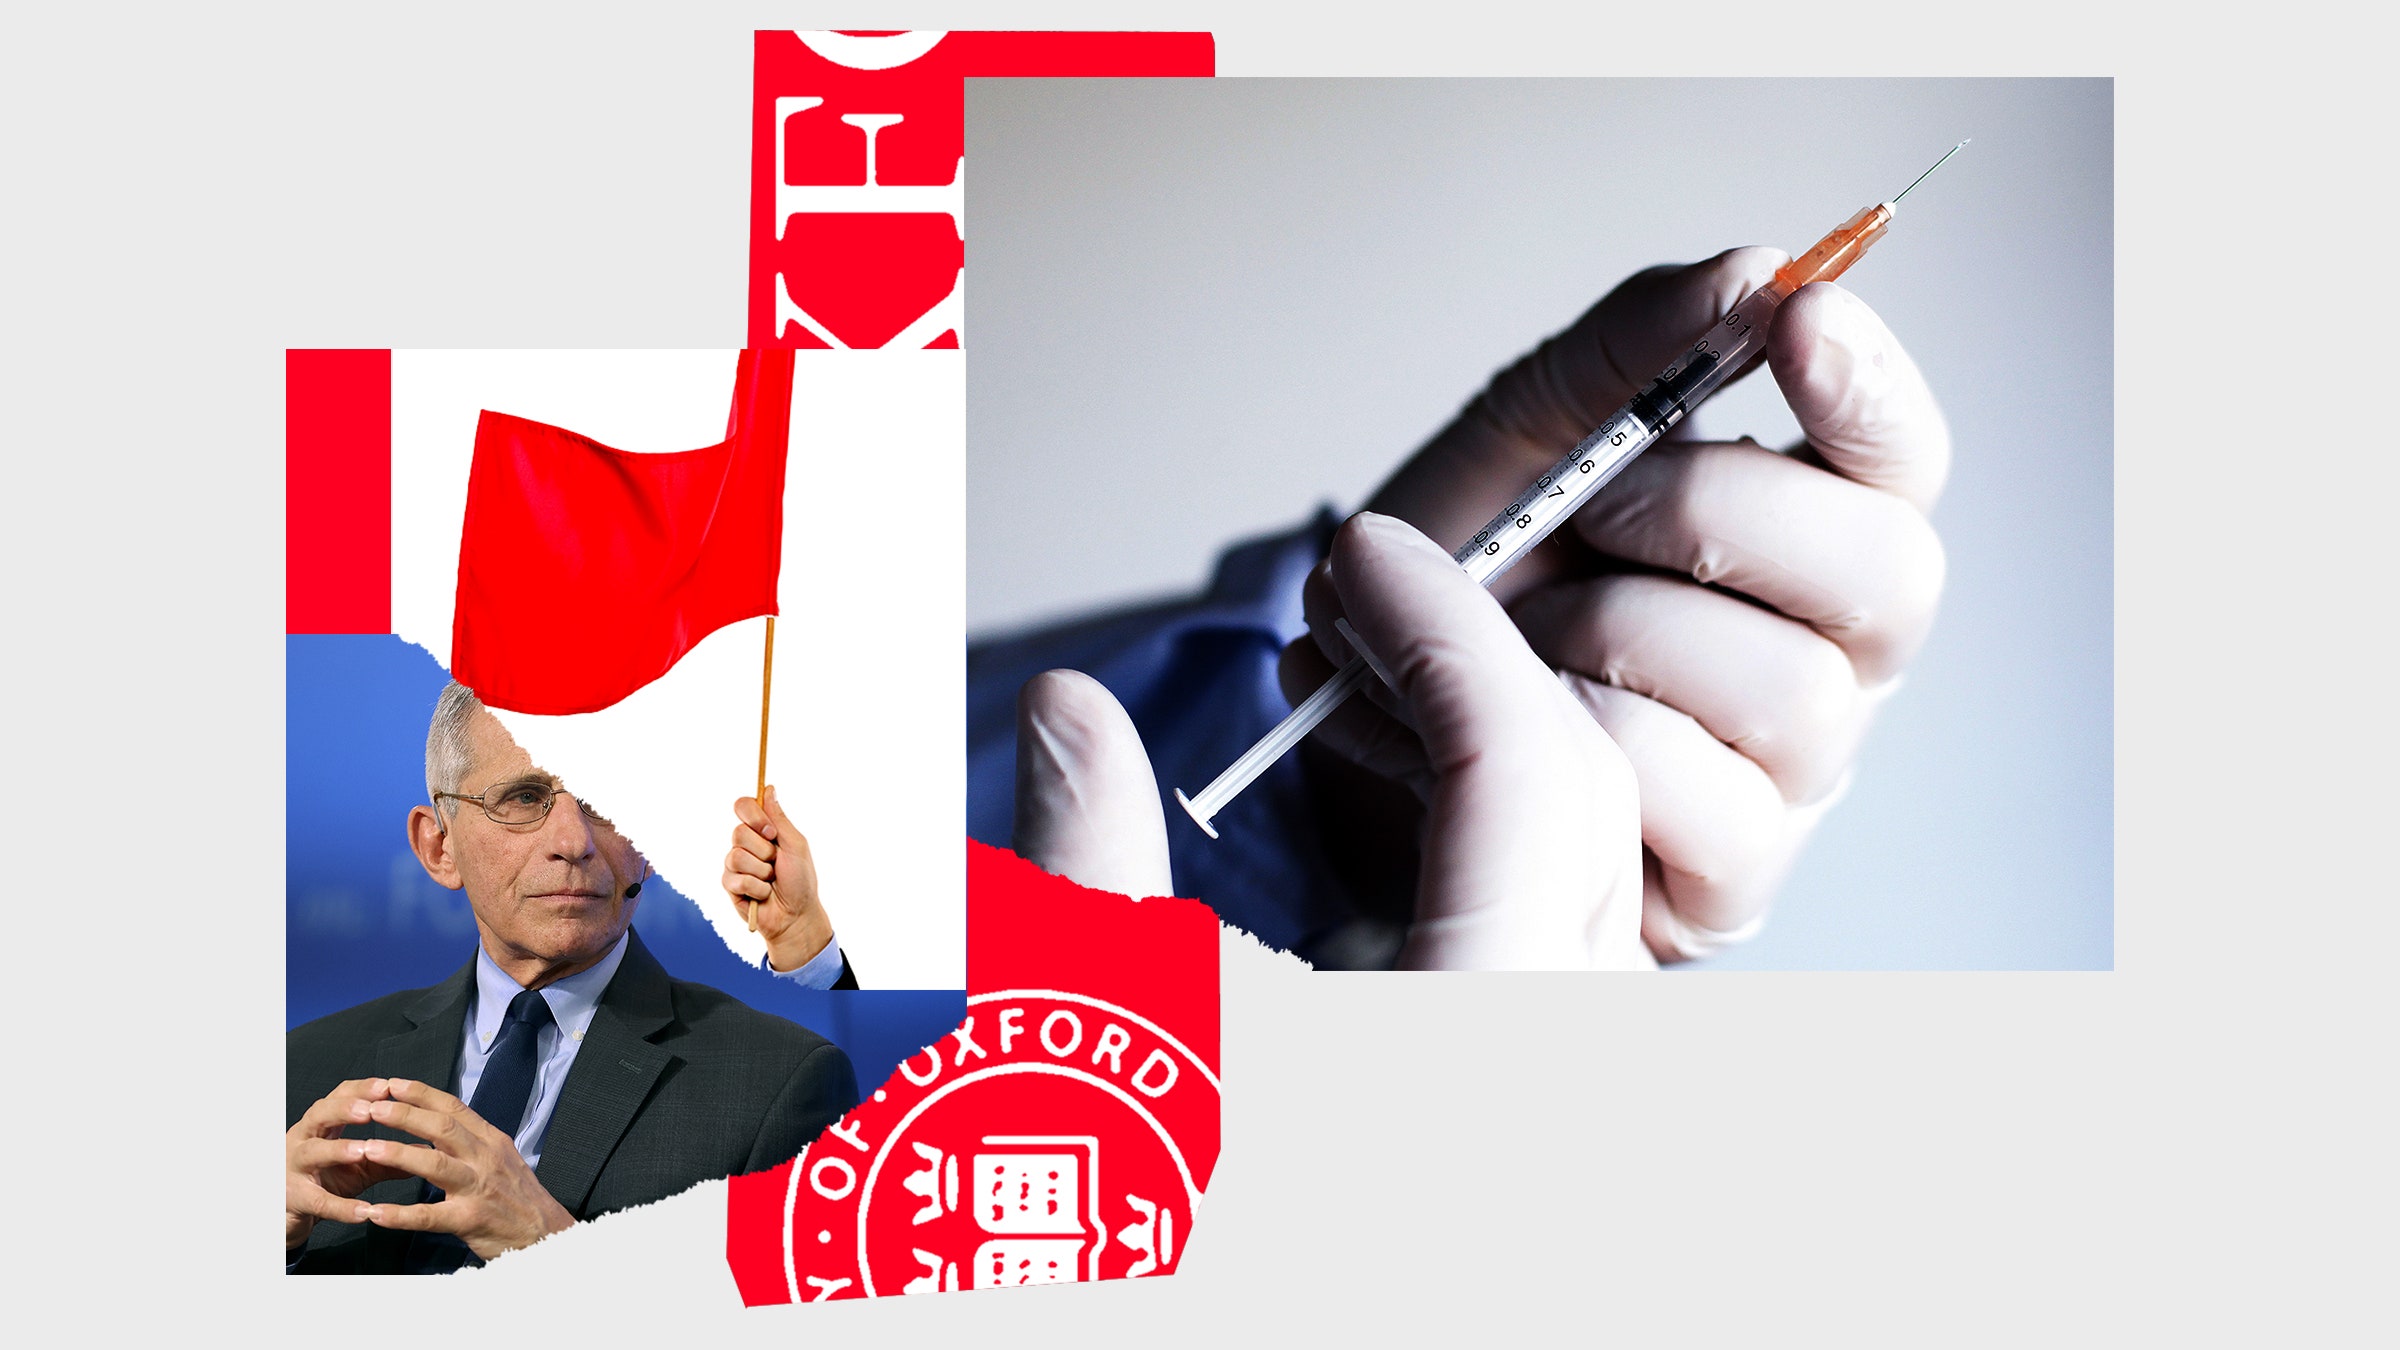 Colagem de imagens de uma seringa com vacina Anthony Fauchi, Oxford Logo e Male Hand segurando uma bandeira vermelha